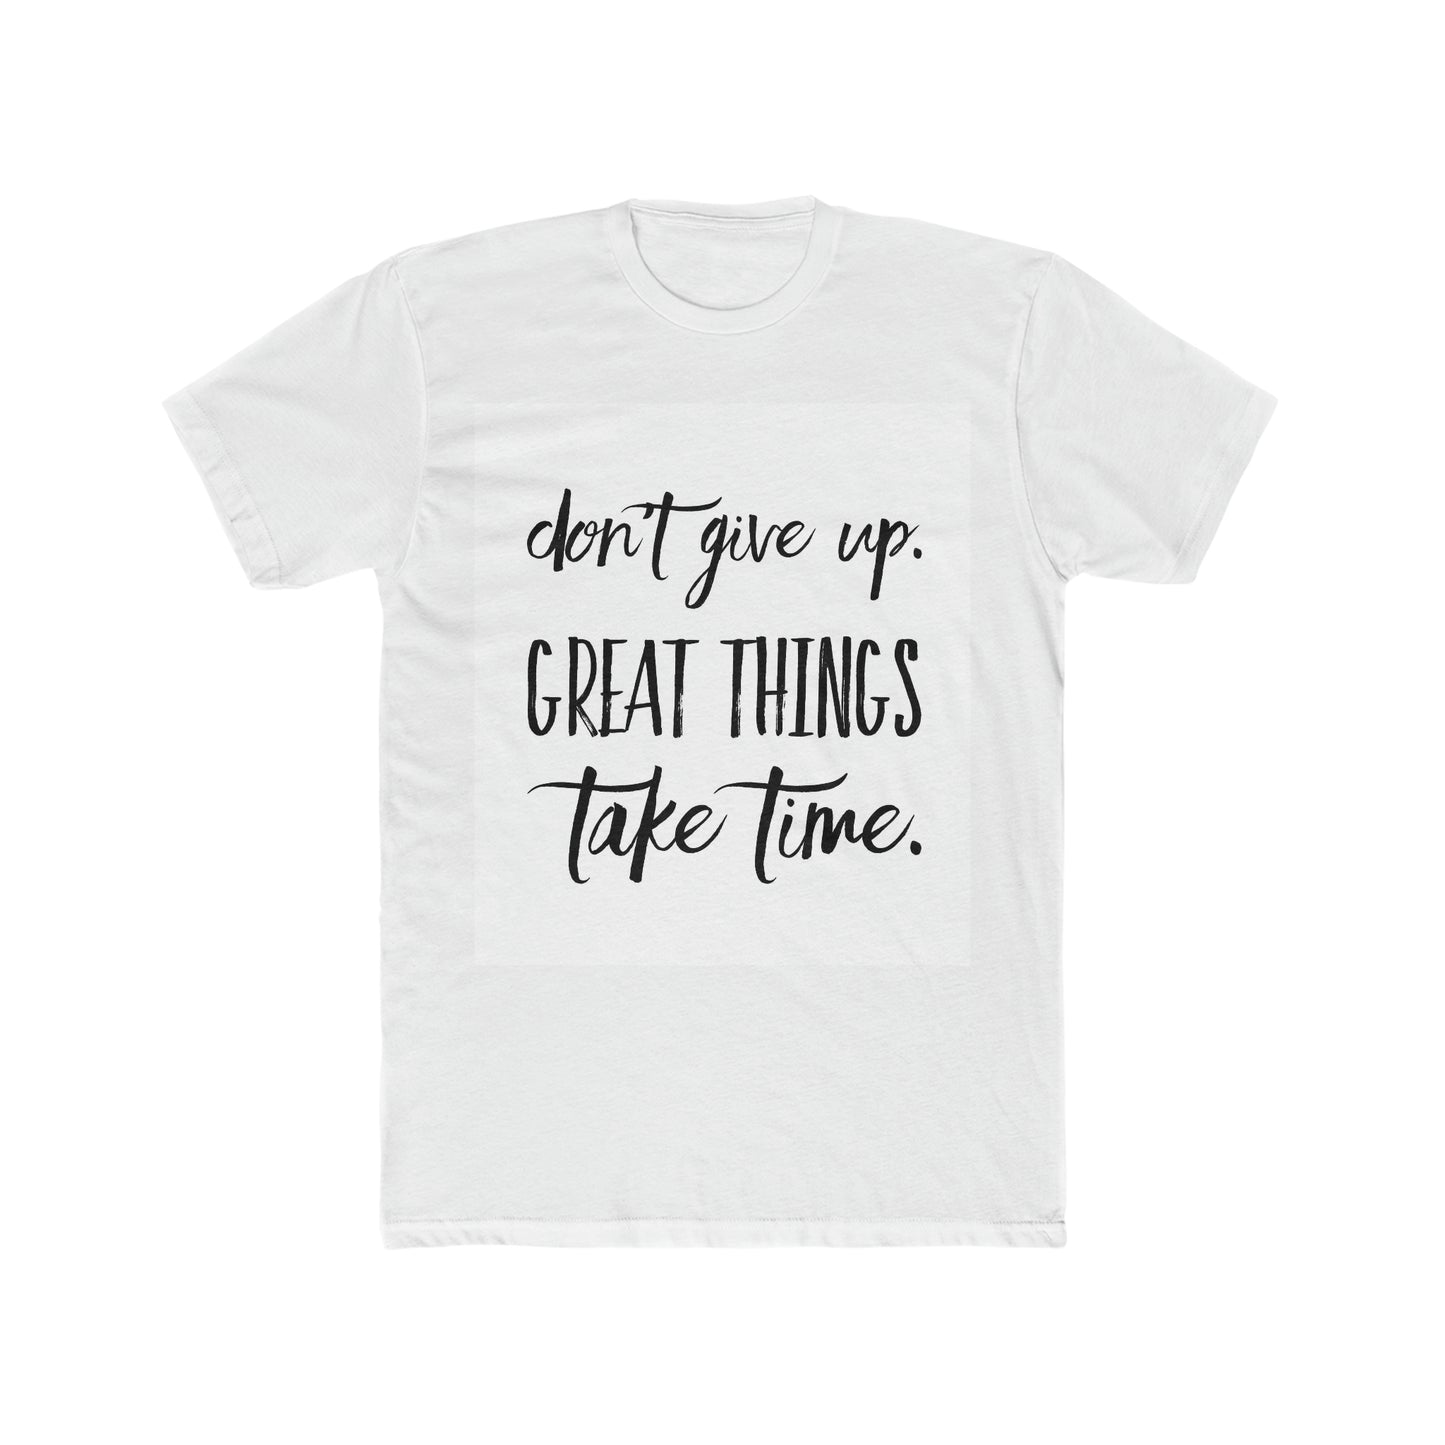 Great things take time t-shirt